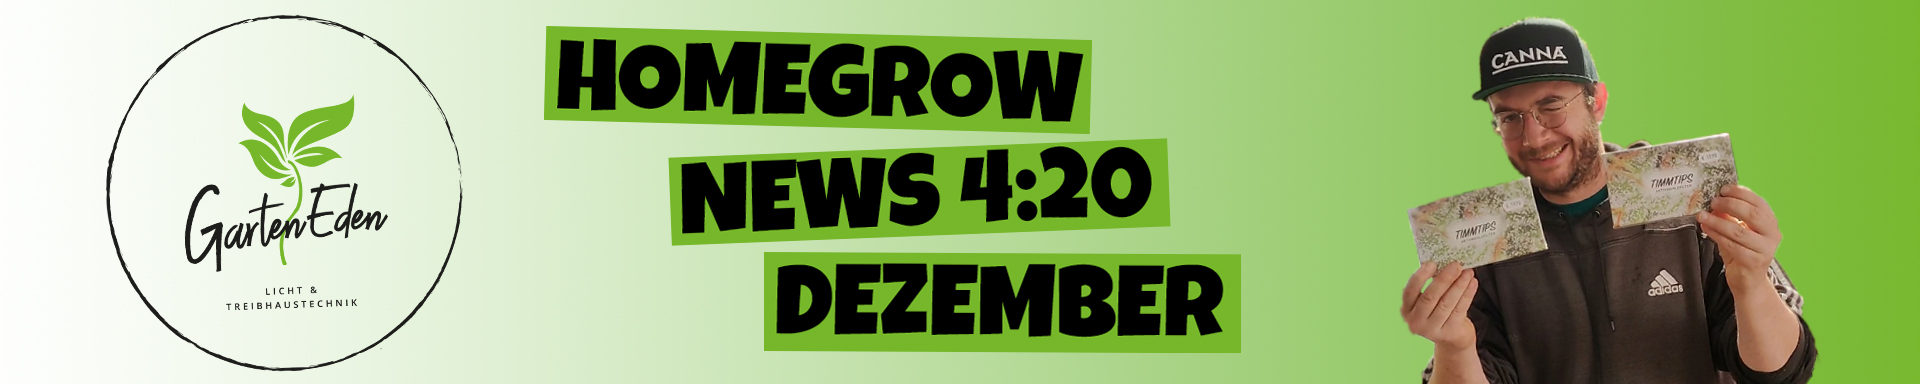 Homegrow News 4:20 Dezember 2021 Thumbnail